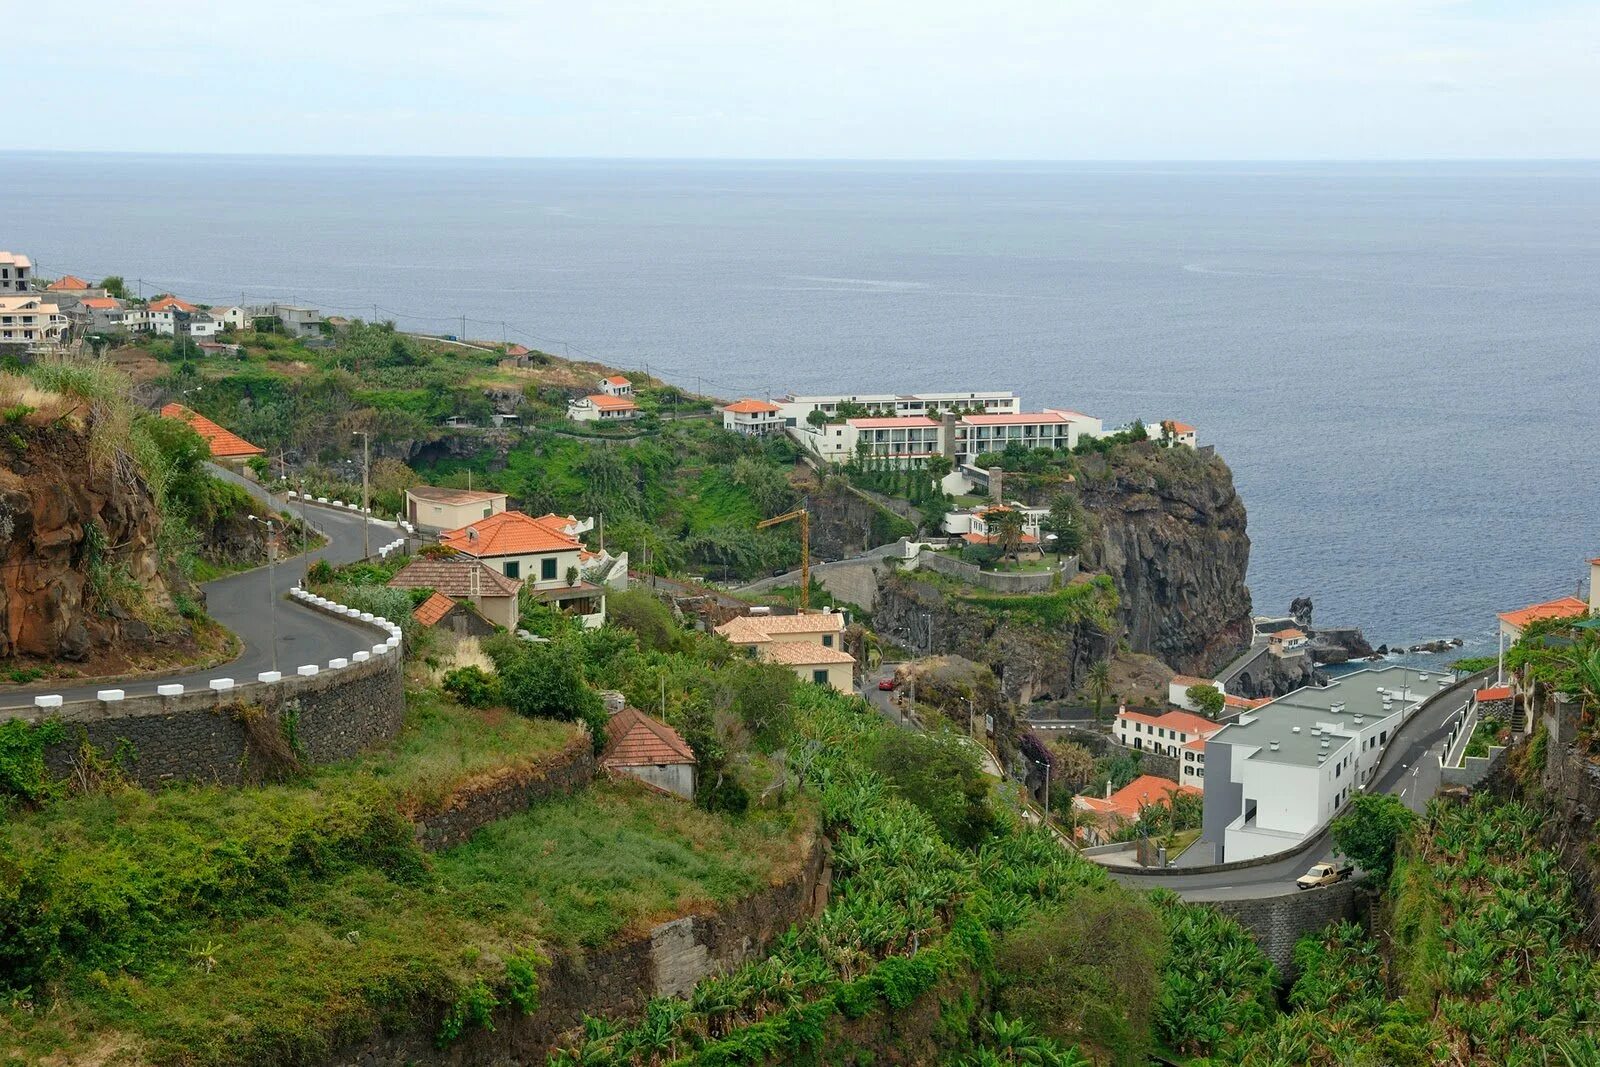 Португальский остров. Мадейра Португалия. Архипелаг Мадейра, Португалия. Мадейра (автономный регион). Мадера остров Португалии.